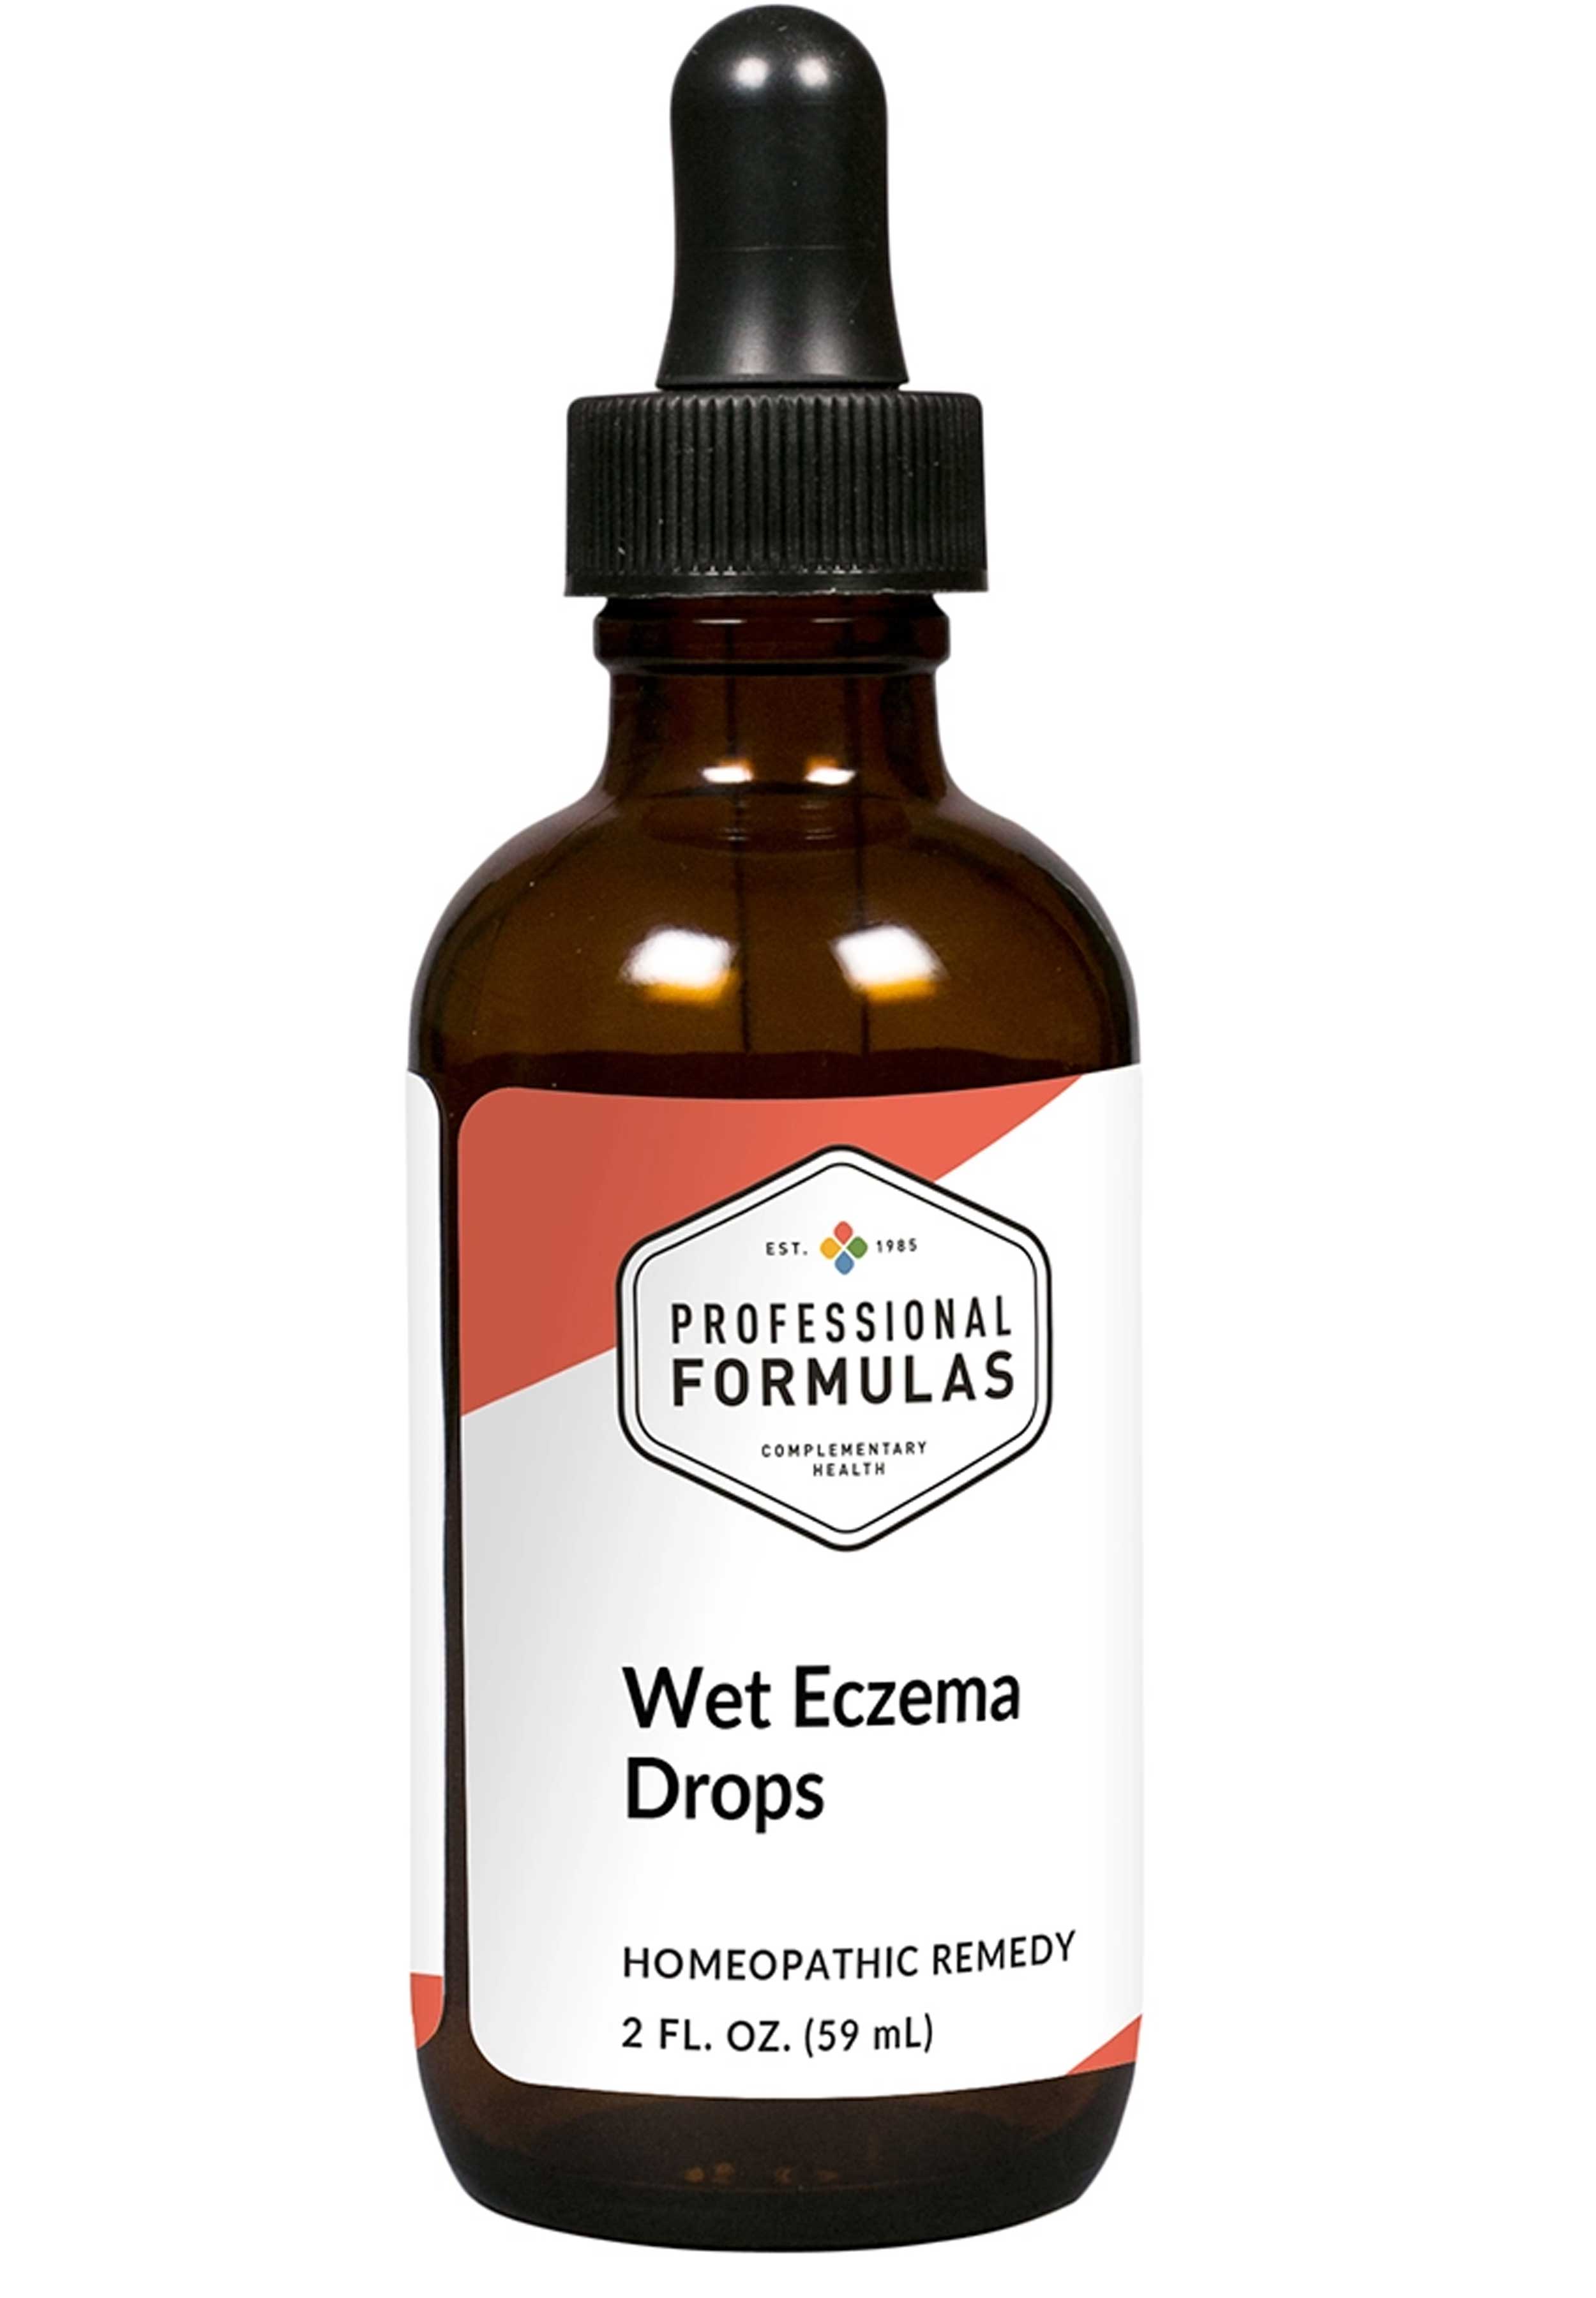 Professional Formulas Wet Eczema Drops